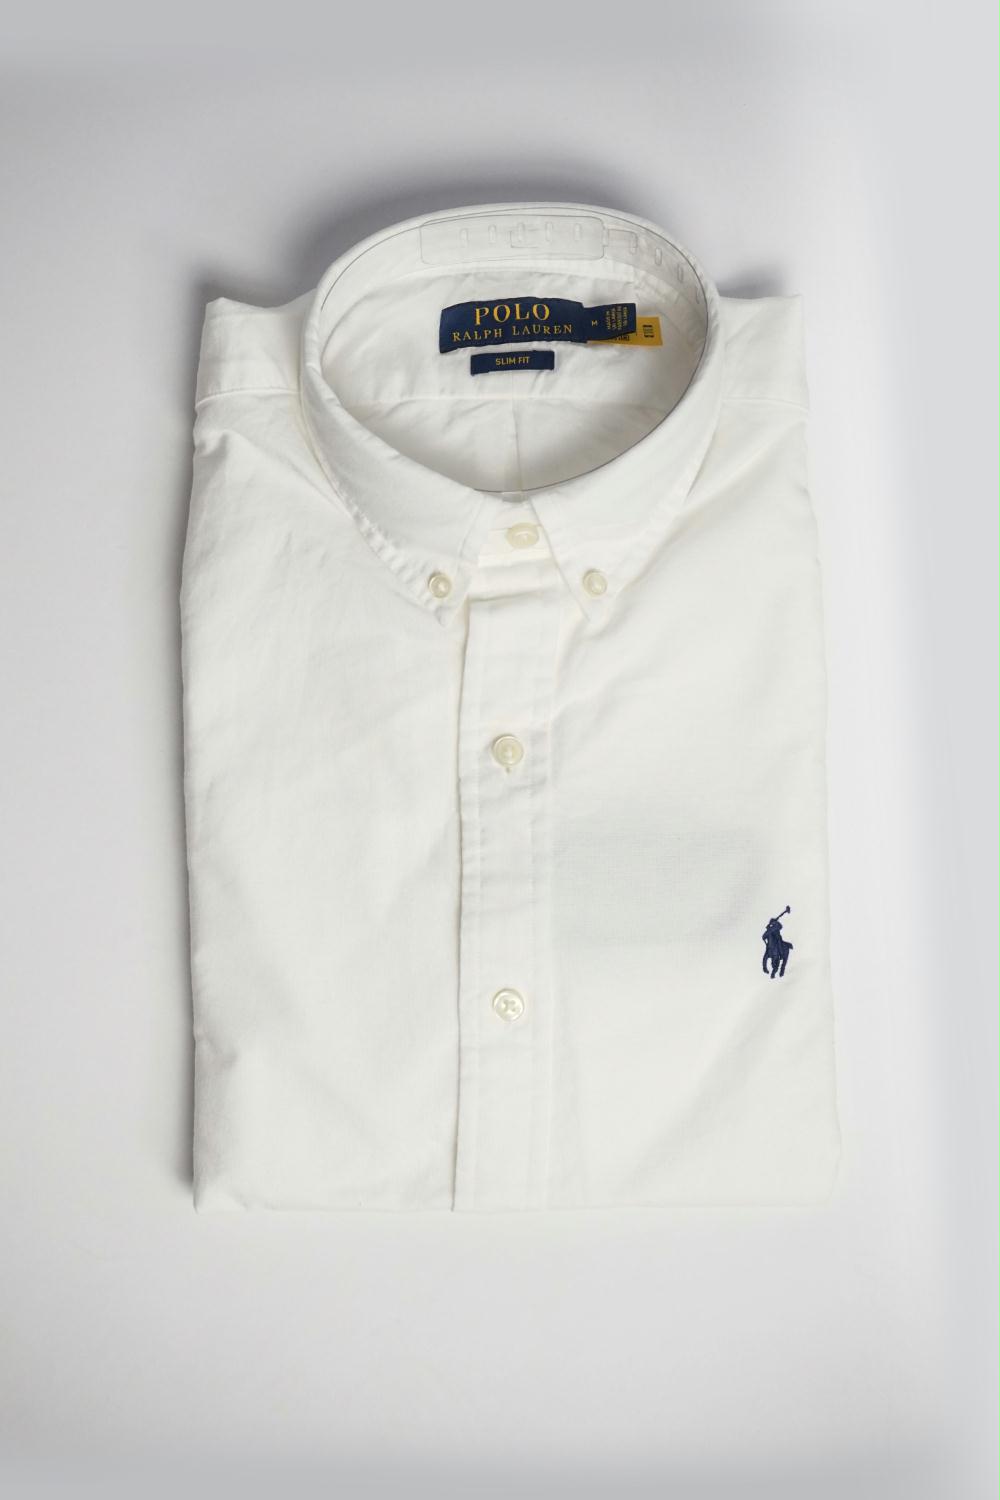 Fascineren onderwijzen Vrijgevigheid Polo Ralph Lauren - Wit Oxford overhemd - Zoetelief Mode